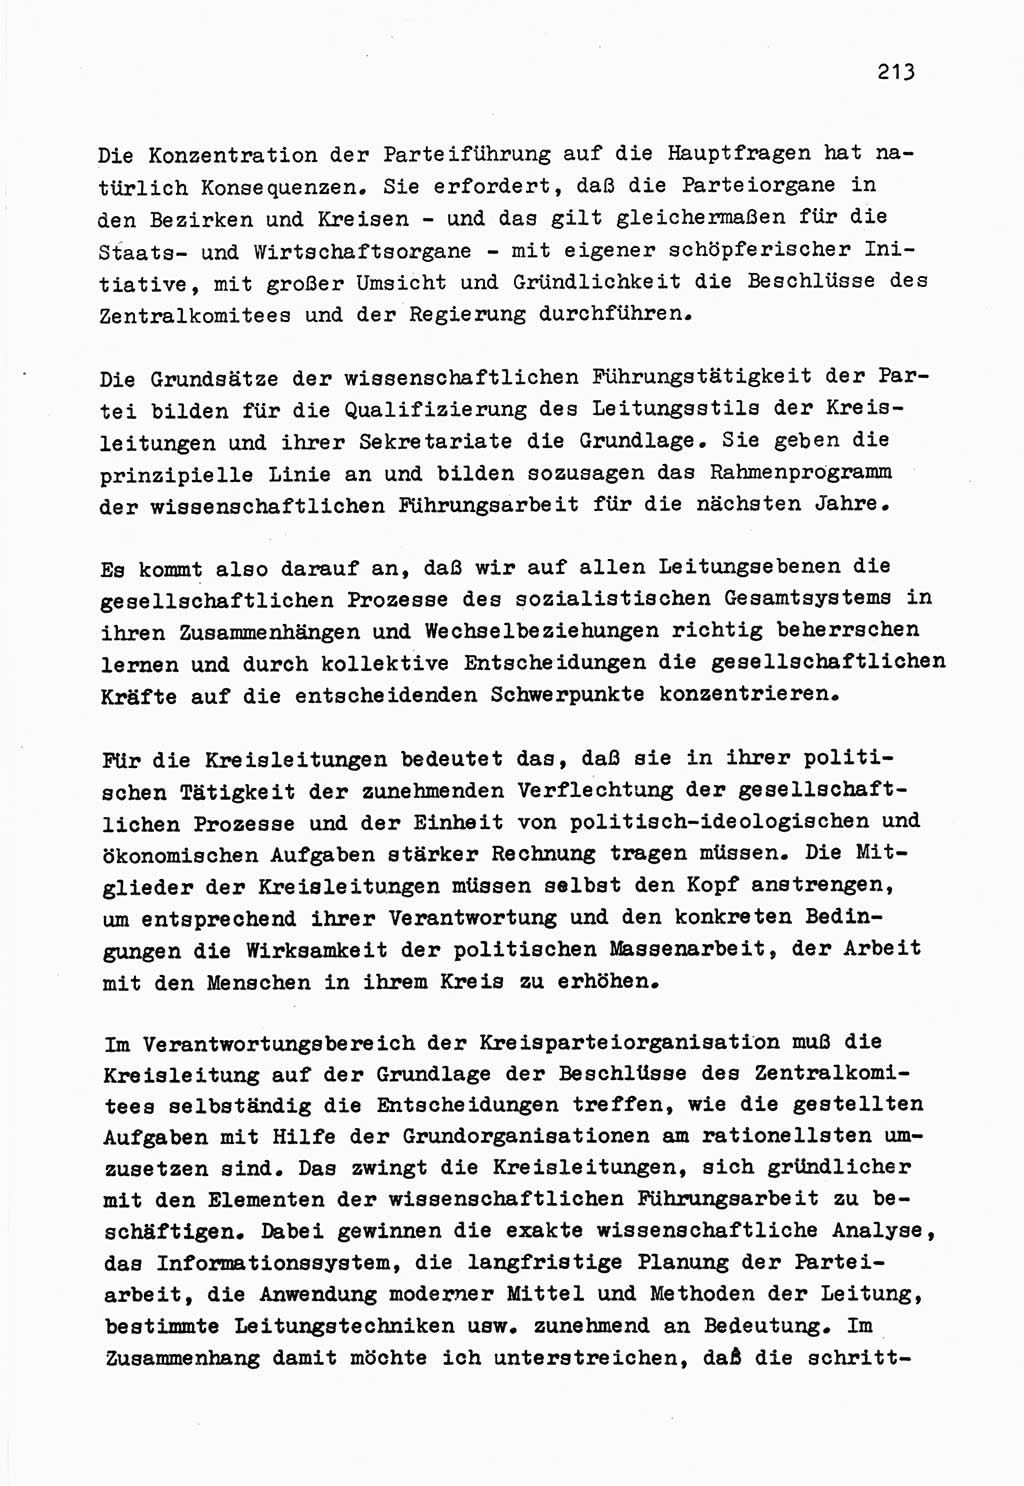 Zu Fragen der Parteiarbeit [Sozialistische Einheitspartei Deutschlands (SED) Deutsche Demokratische Republik (DDR)] 1979, Seite 213 (Fr. PA SED DDR 1979, S. 213)